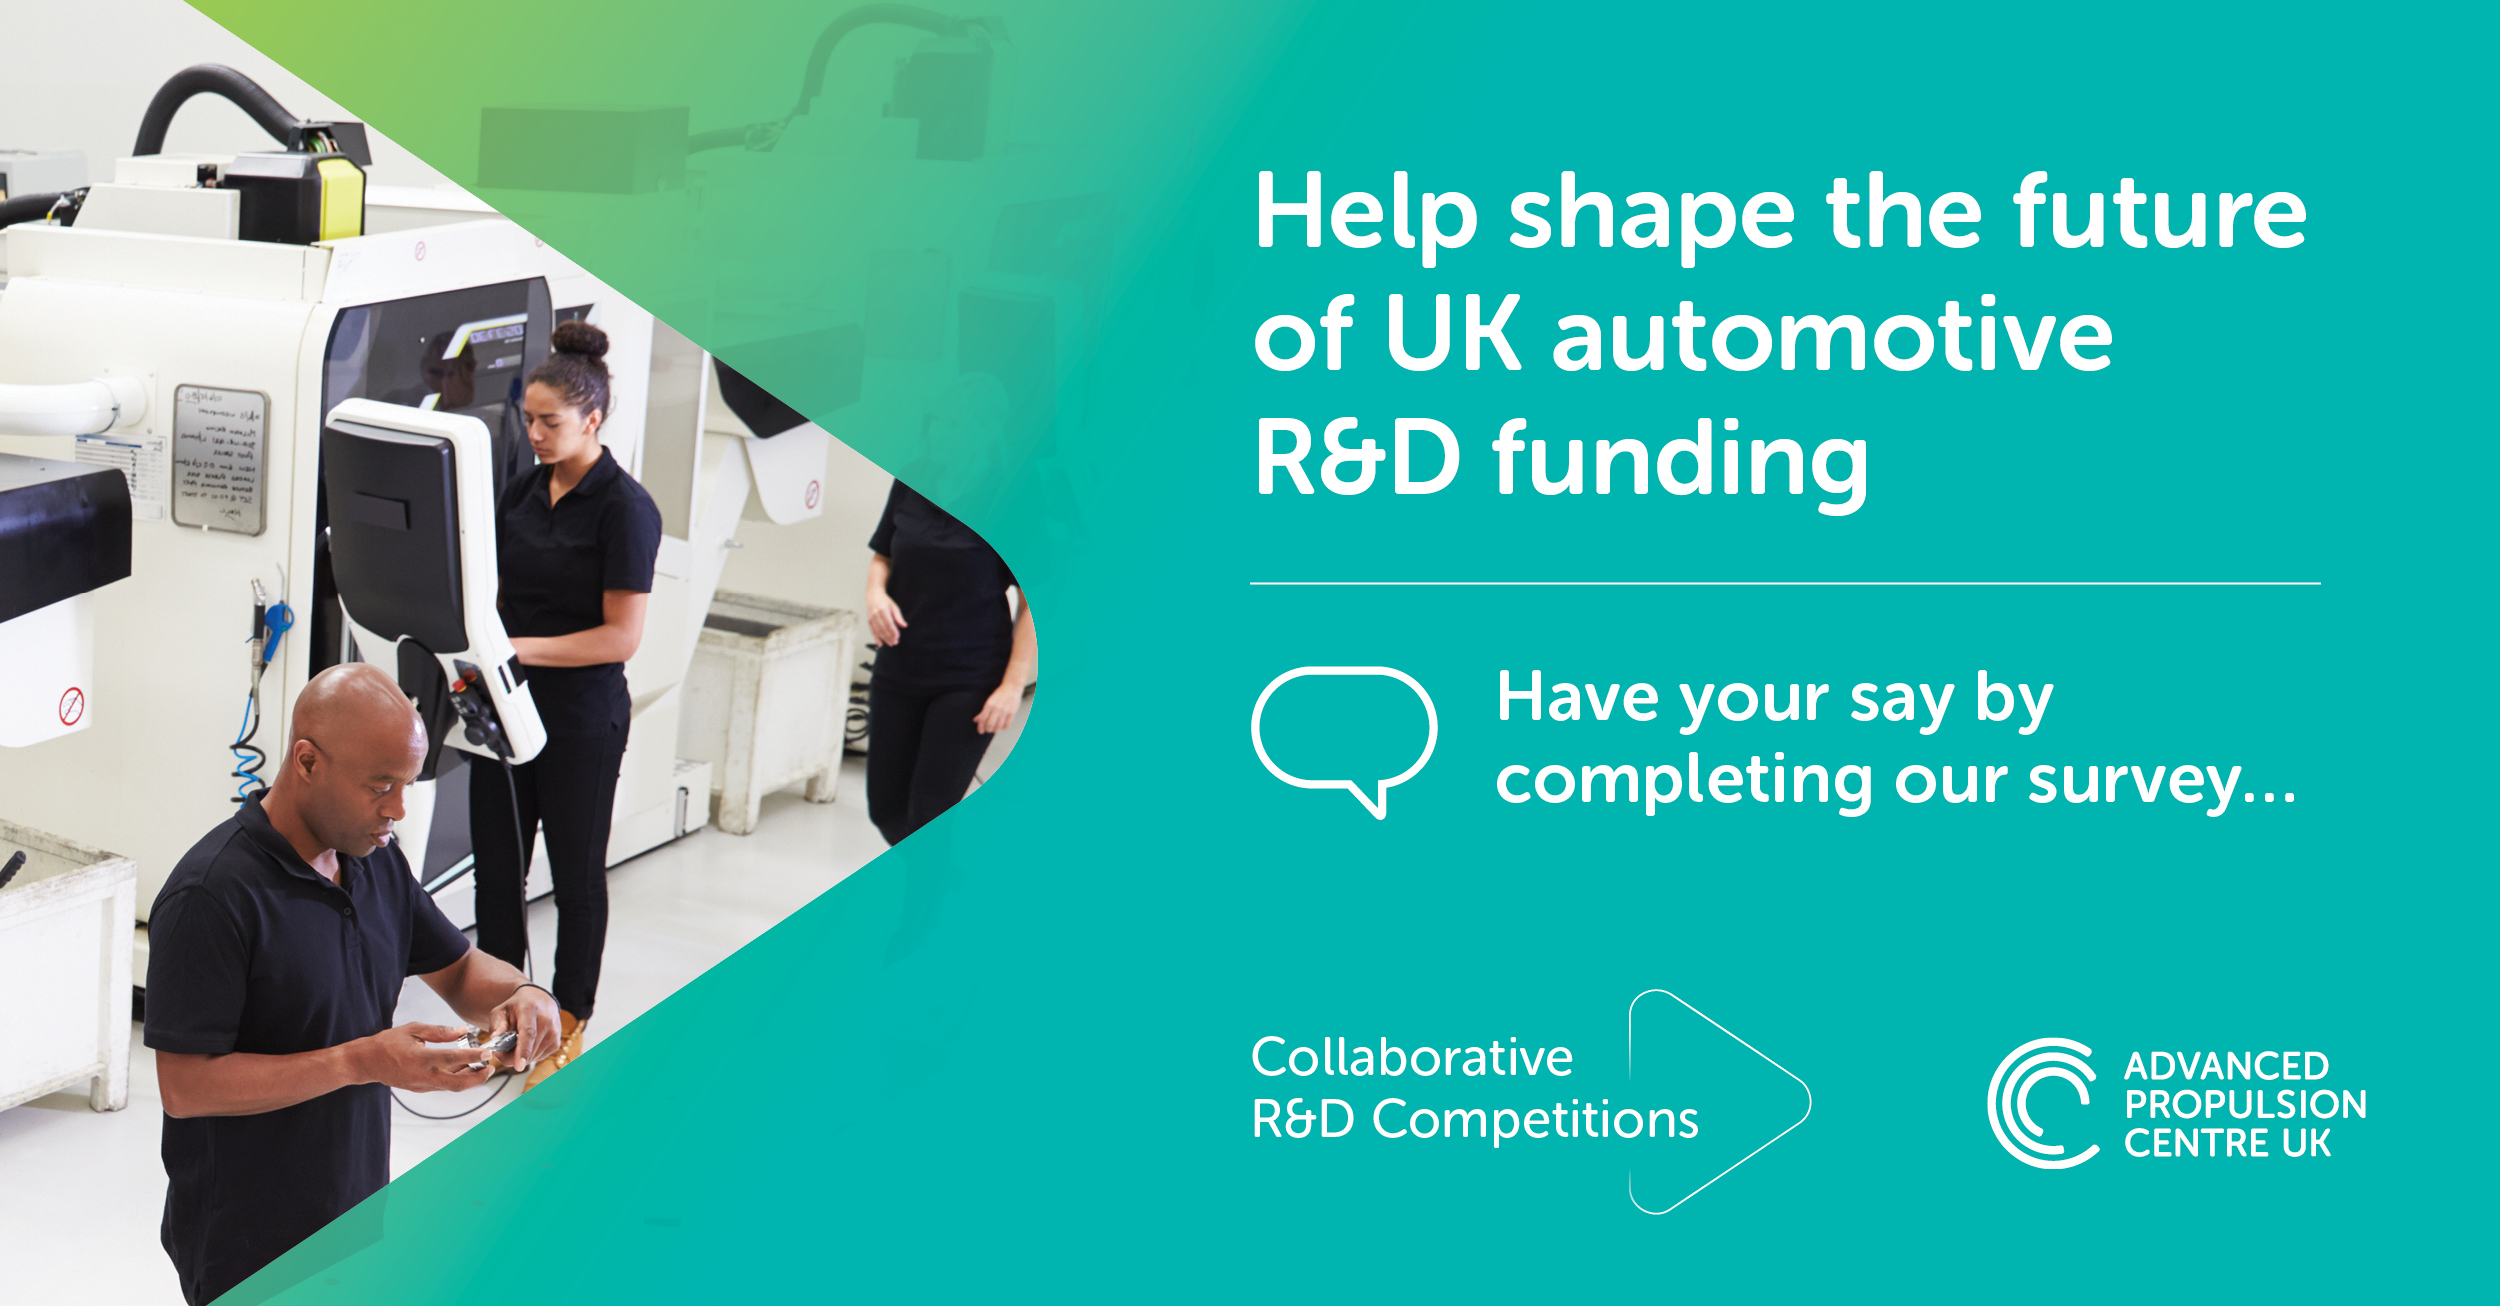 Automotive R&D funding consultation